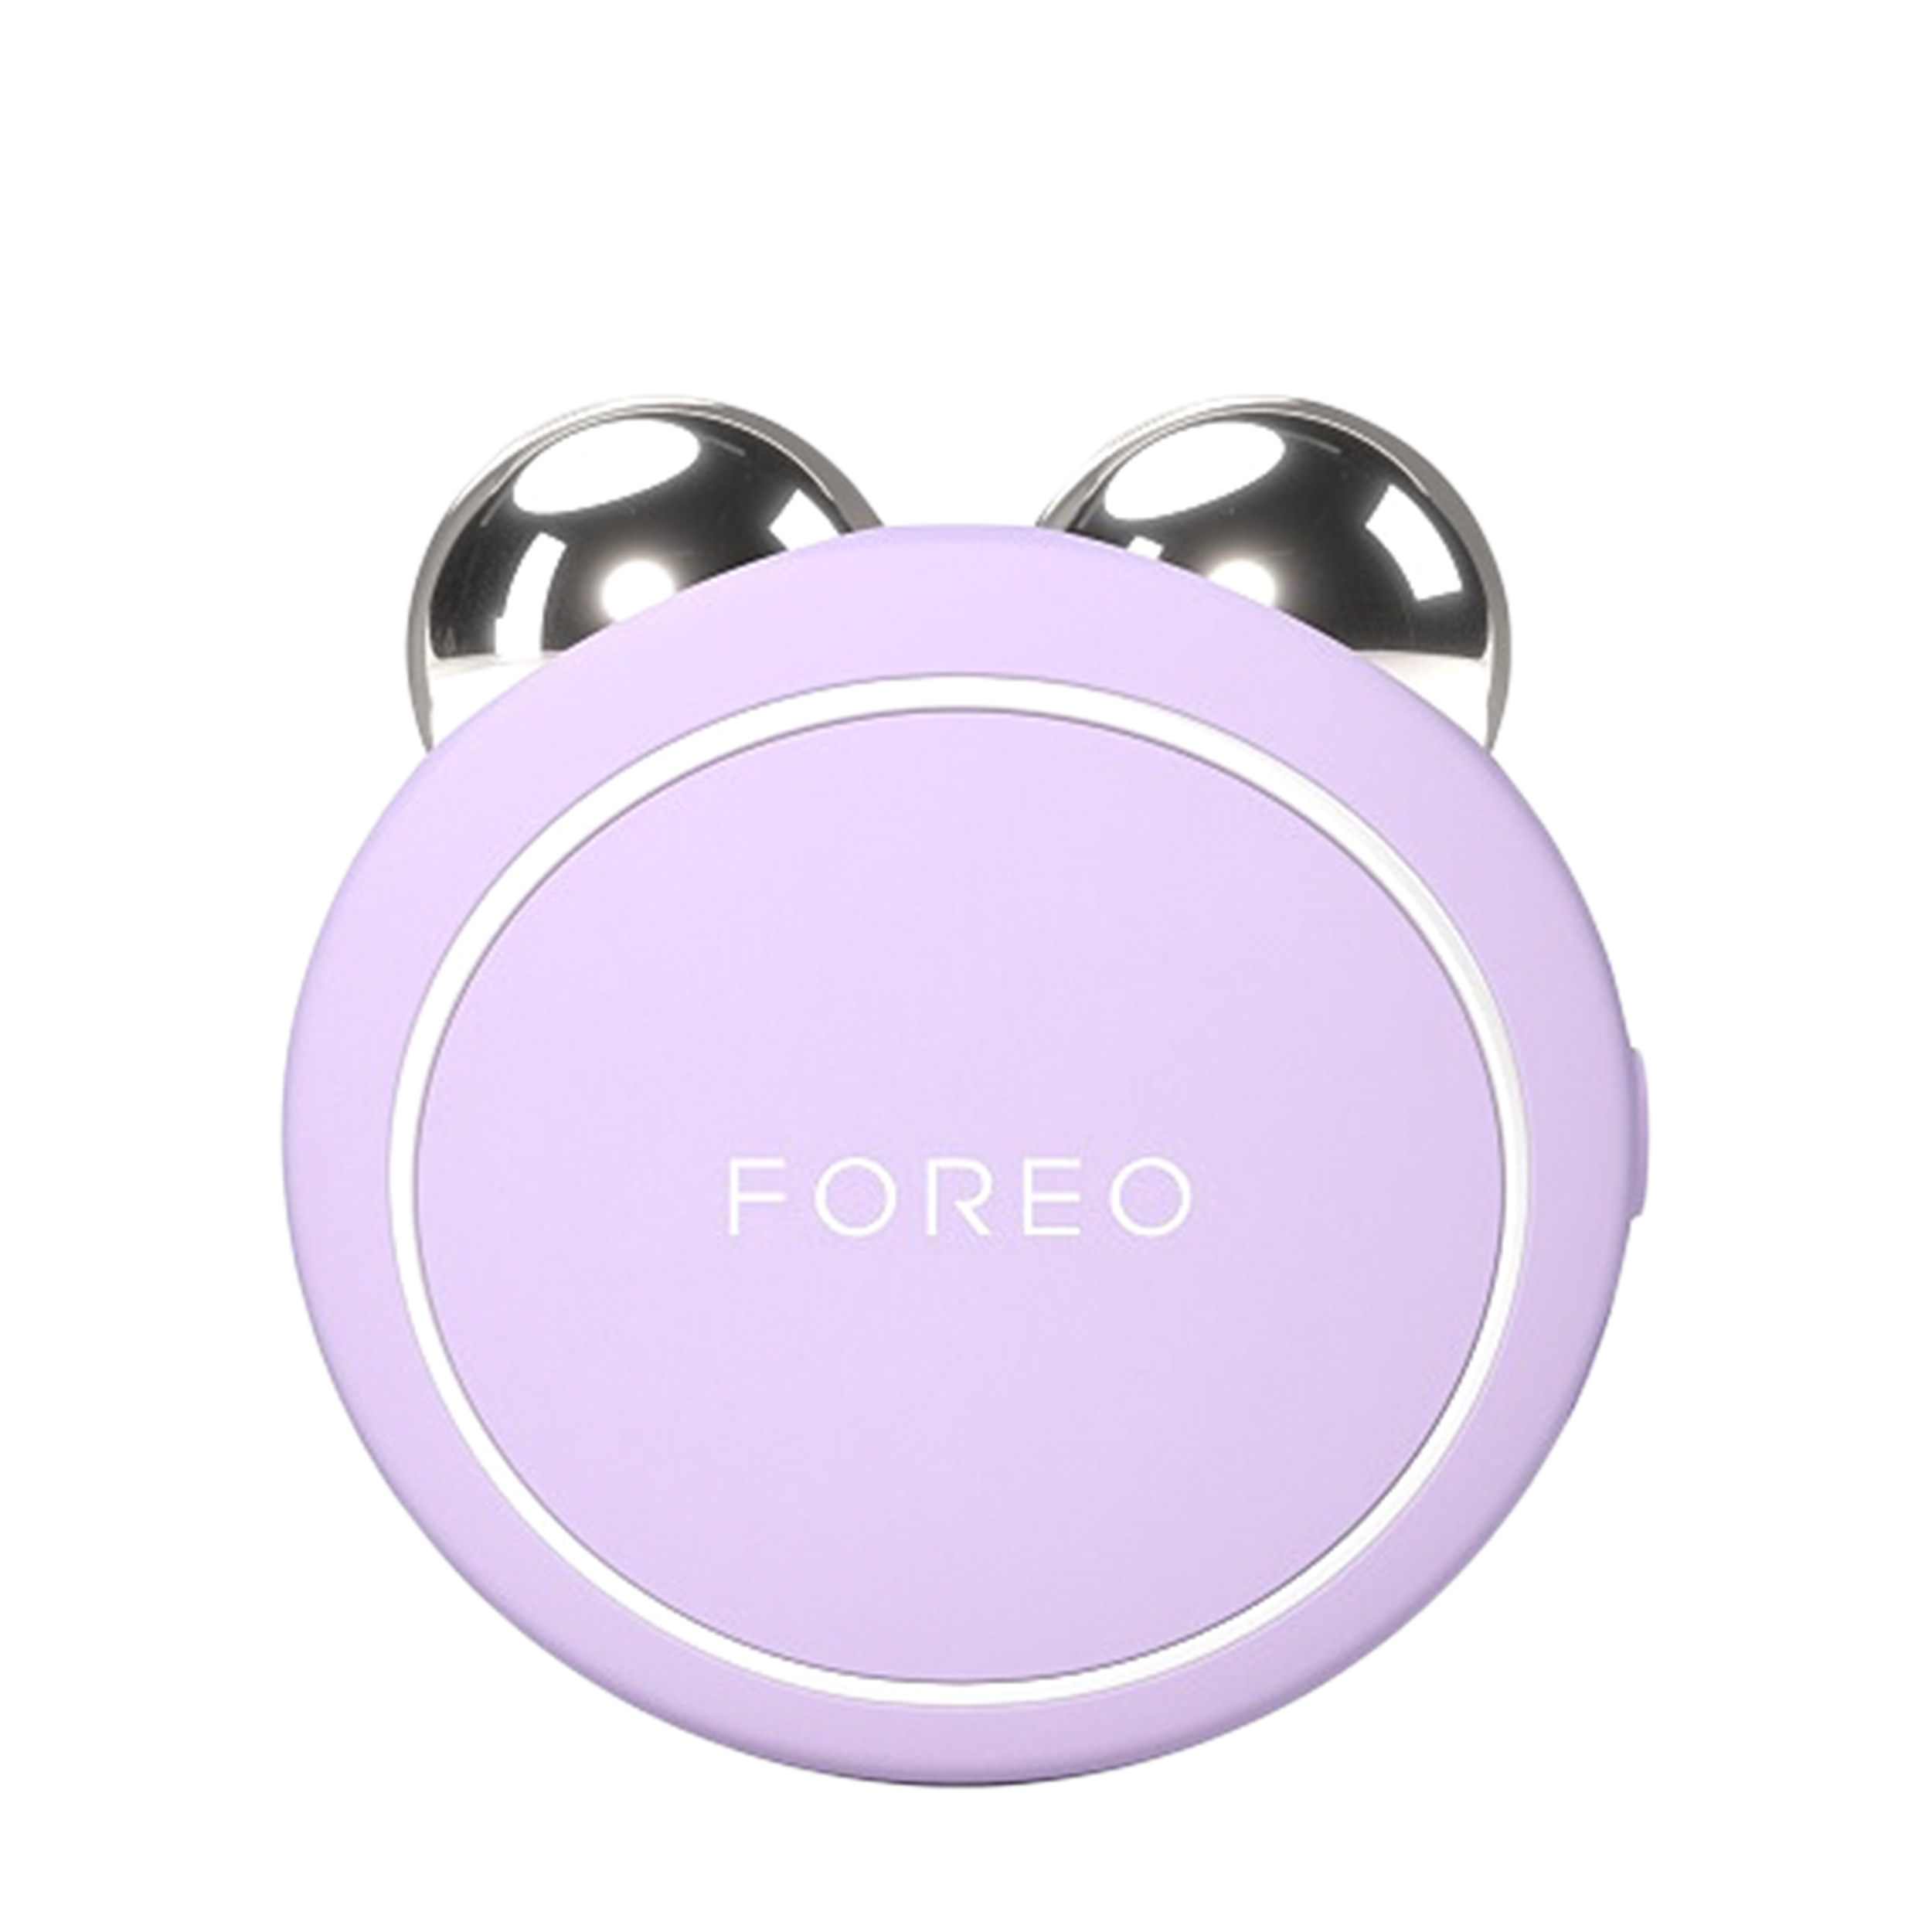 FOREO FOREO BEAR 2 go микротоковый массажер для лица, Lavender